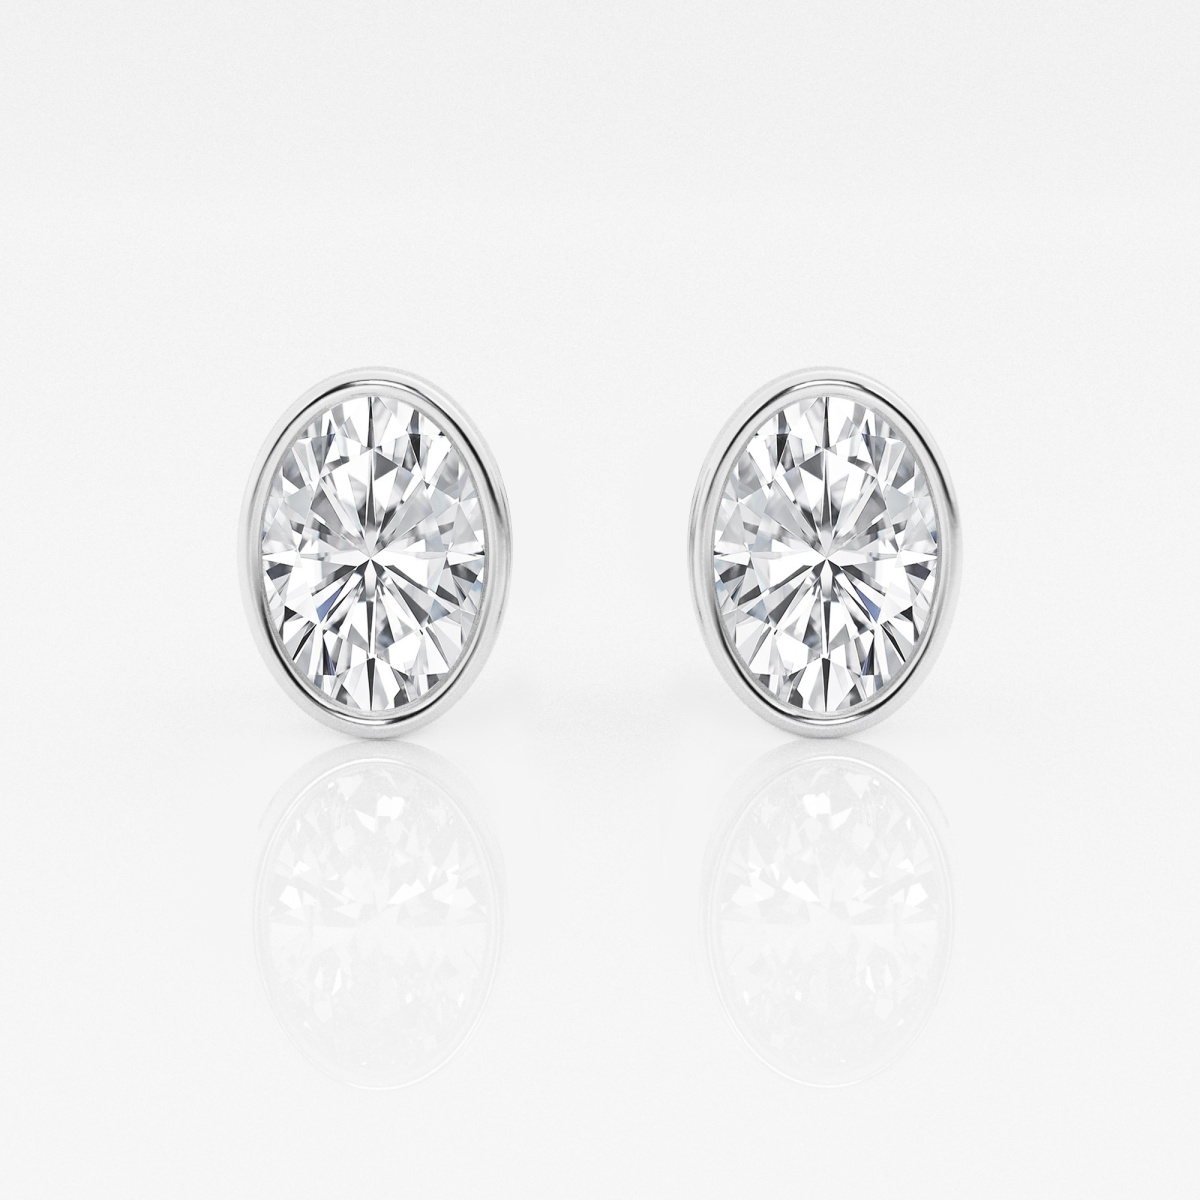 2 ctw Oval Lab Grown Diamond Bezel Set Solitaire Certified Stud Earrings